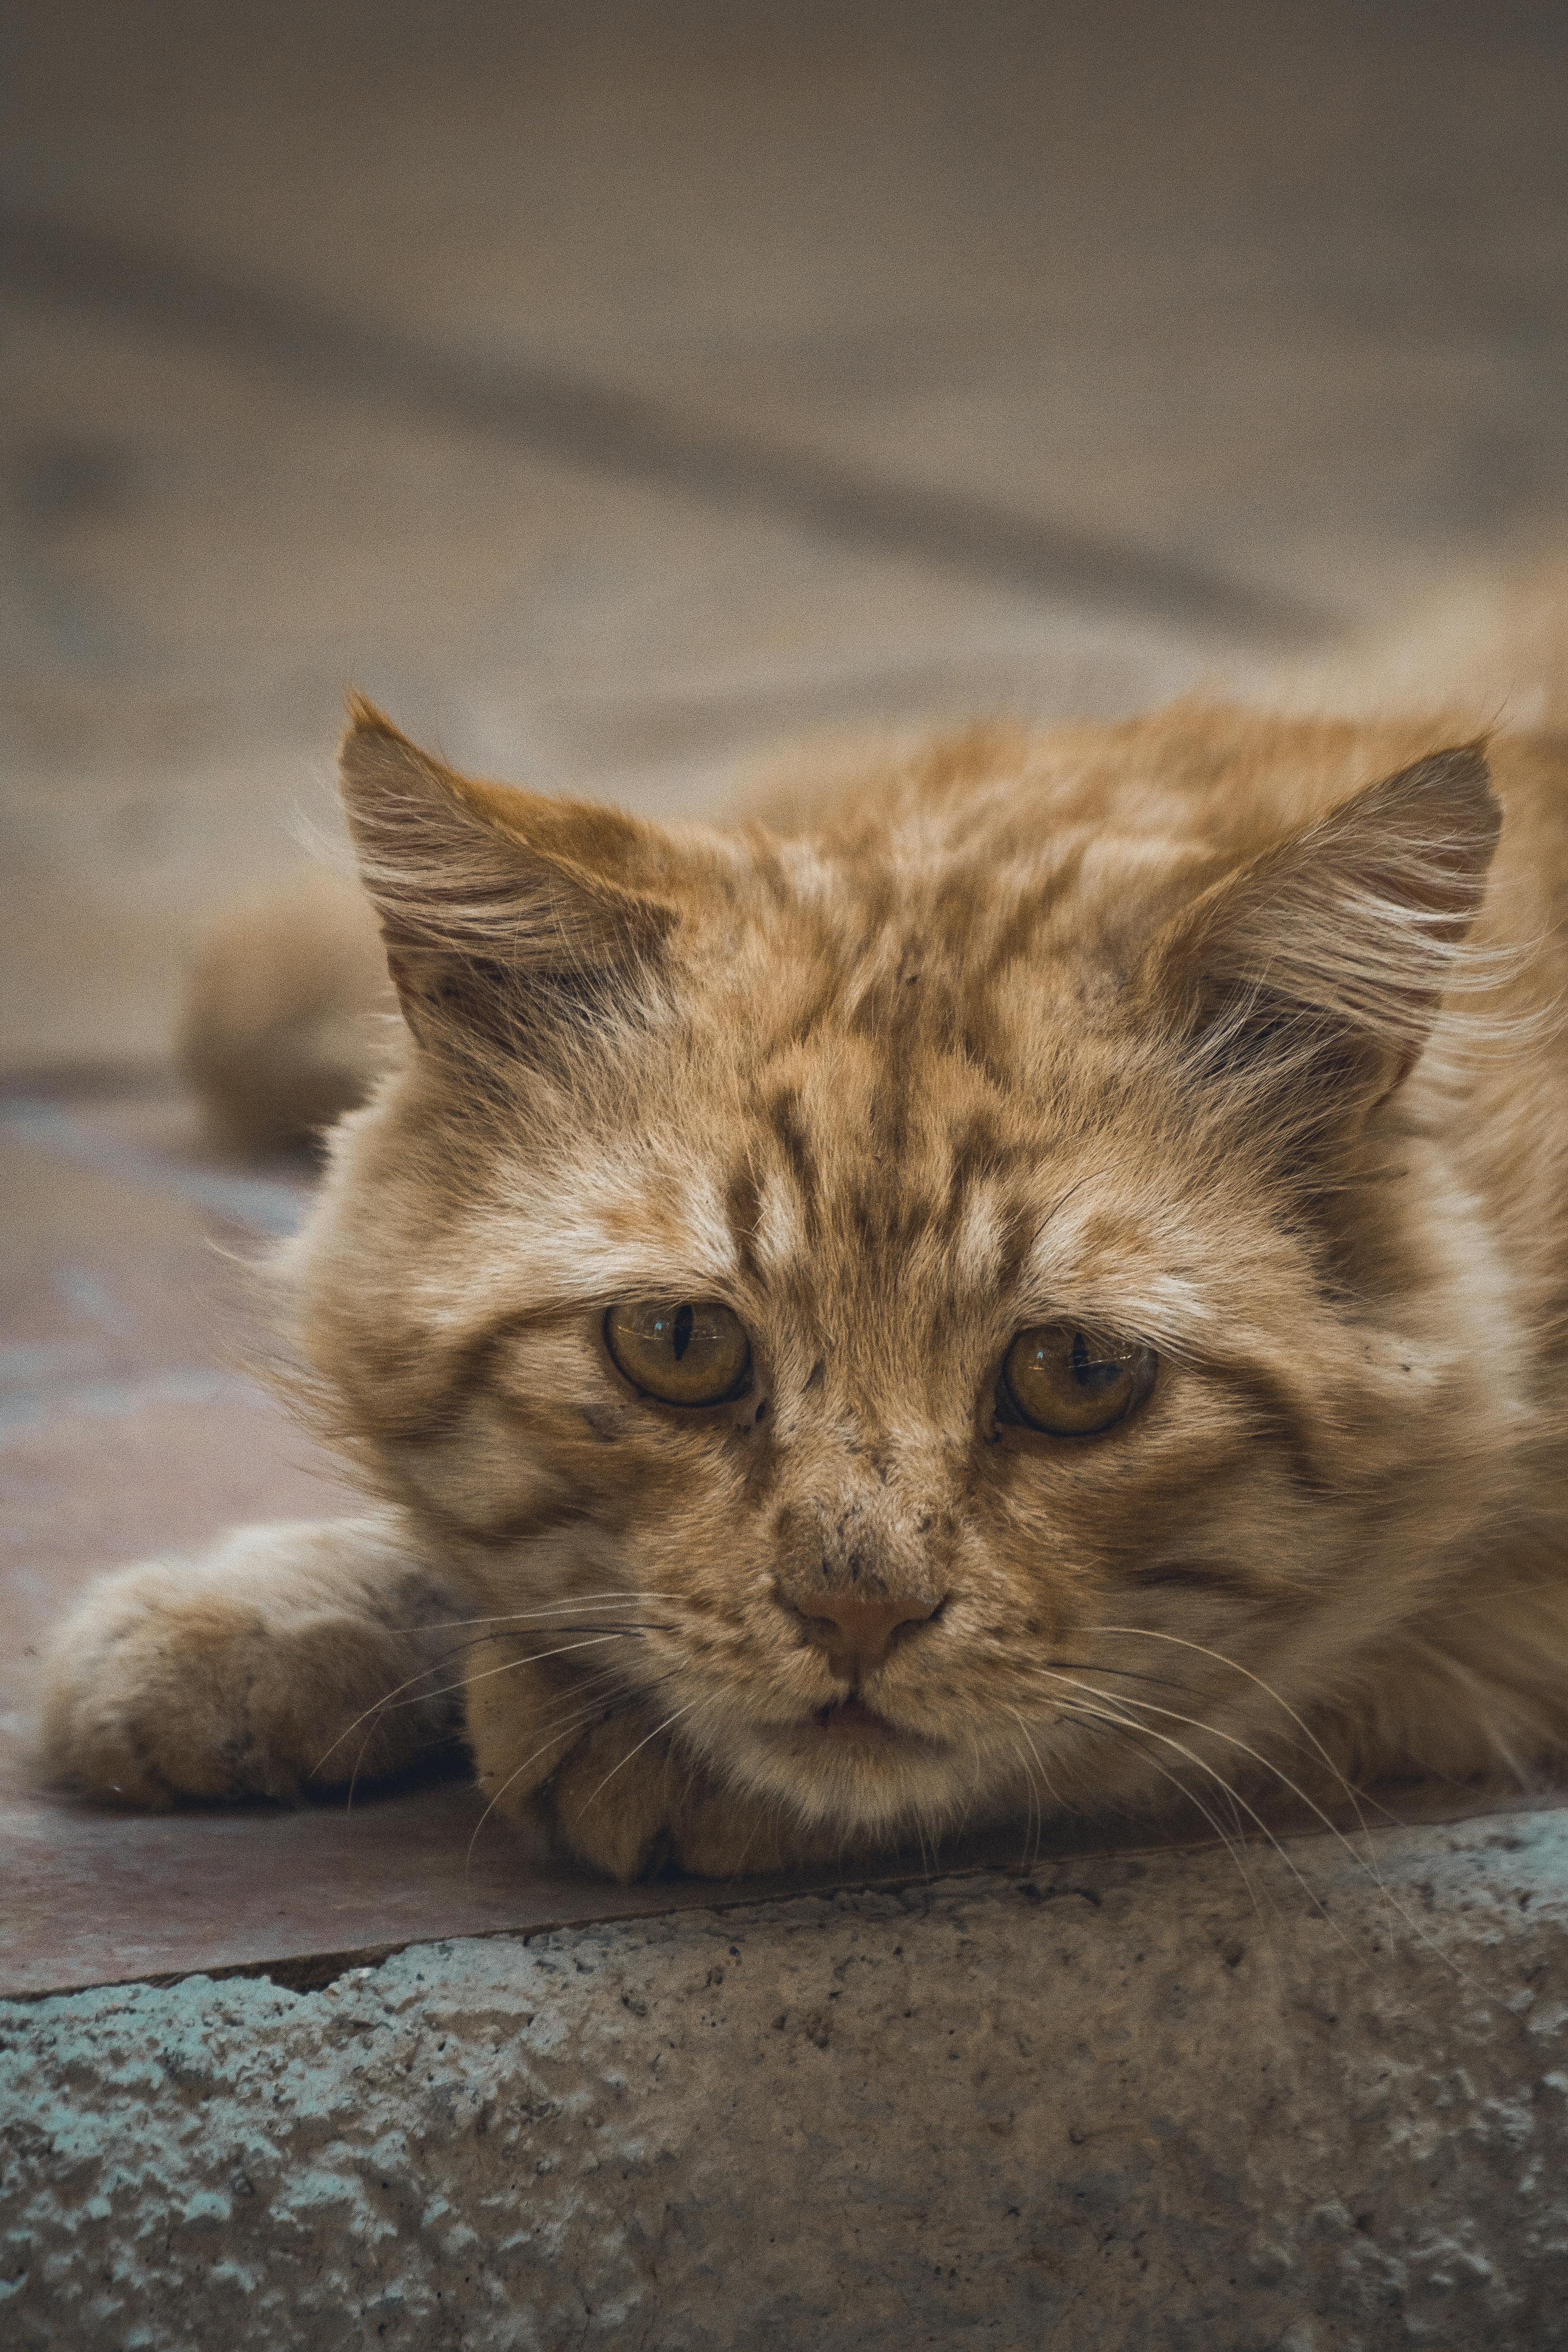 sad kitty